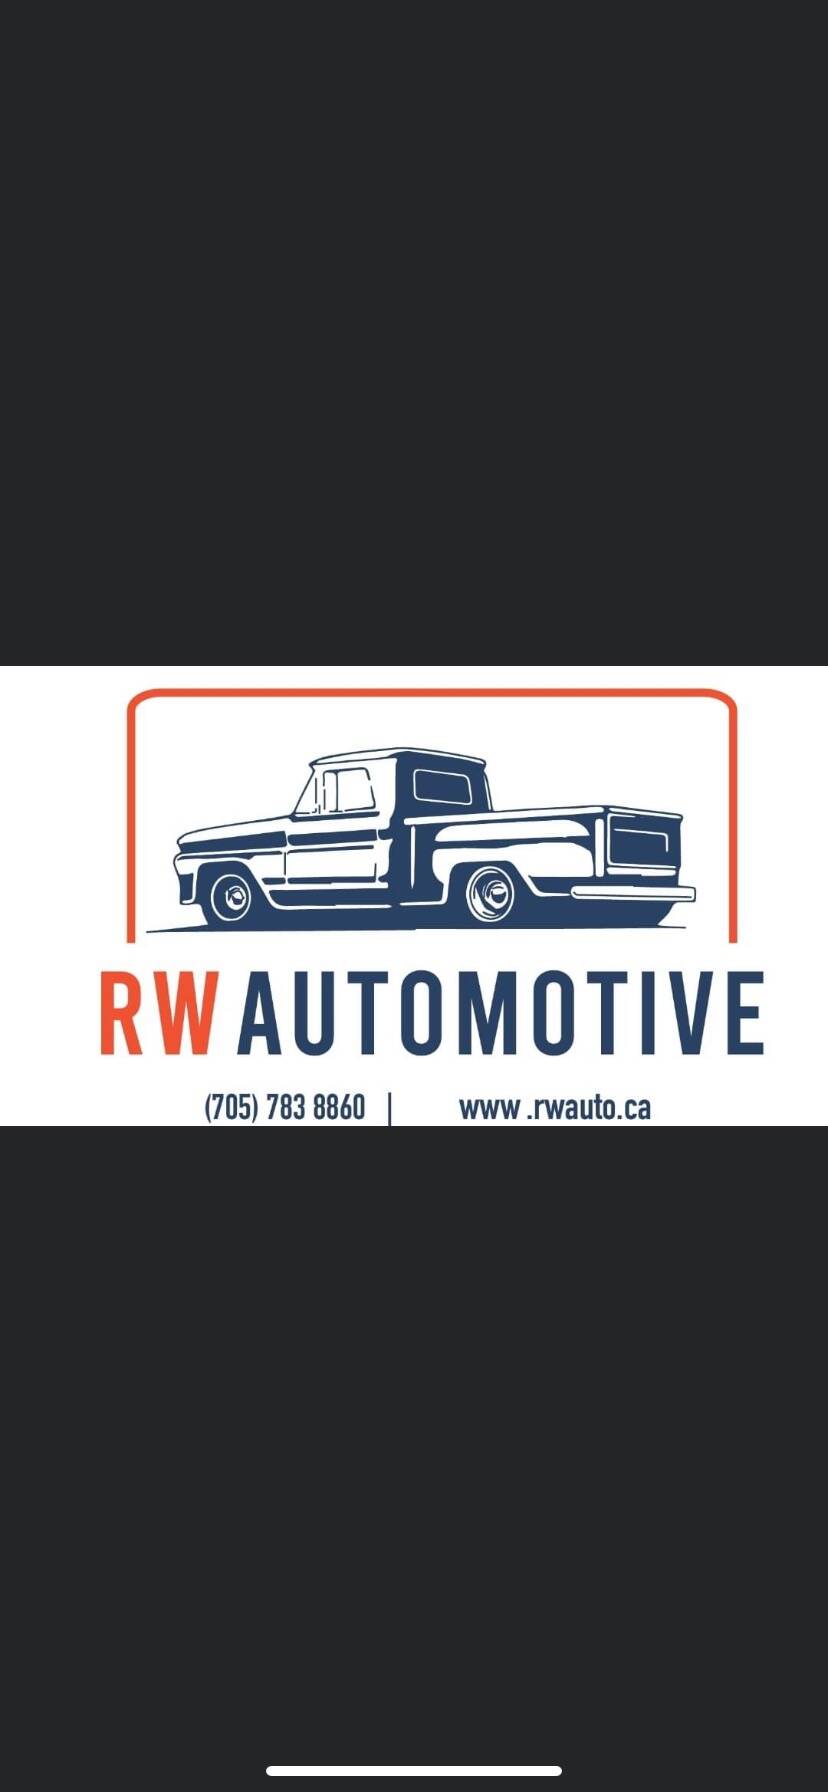 RW Automotive